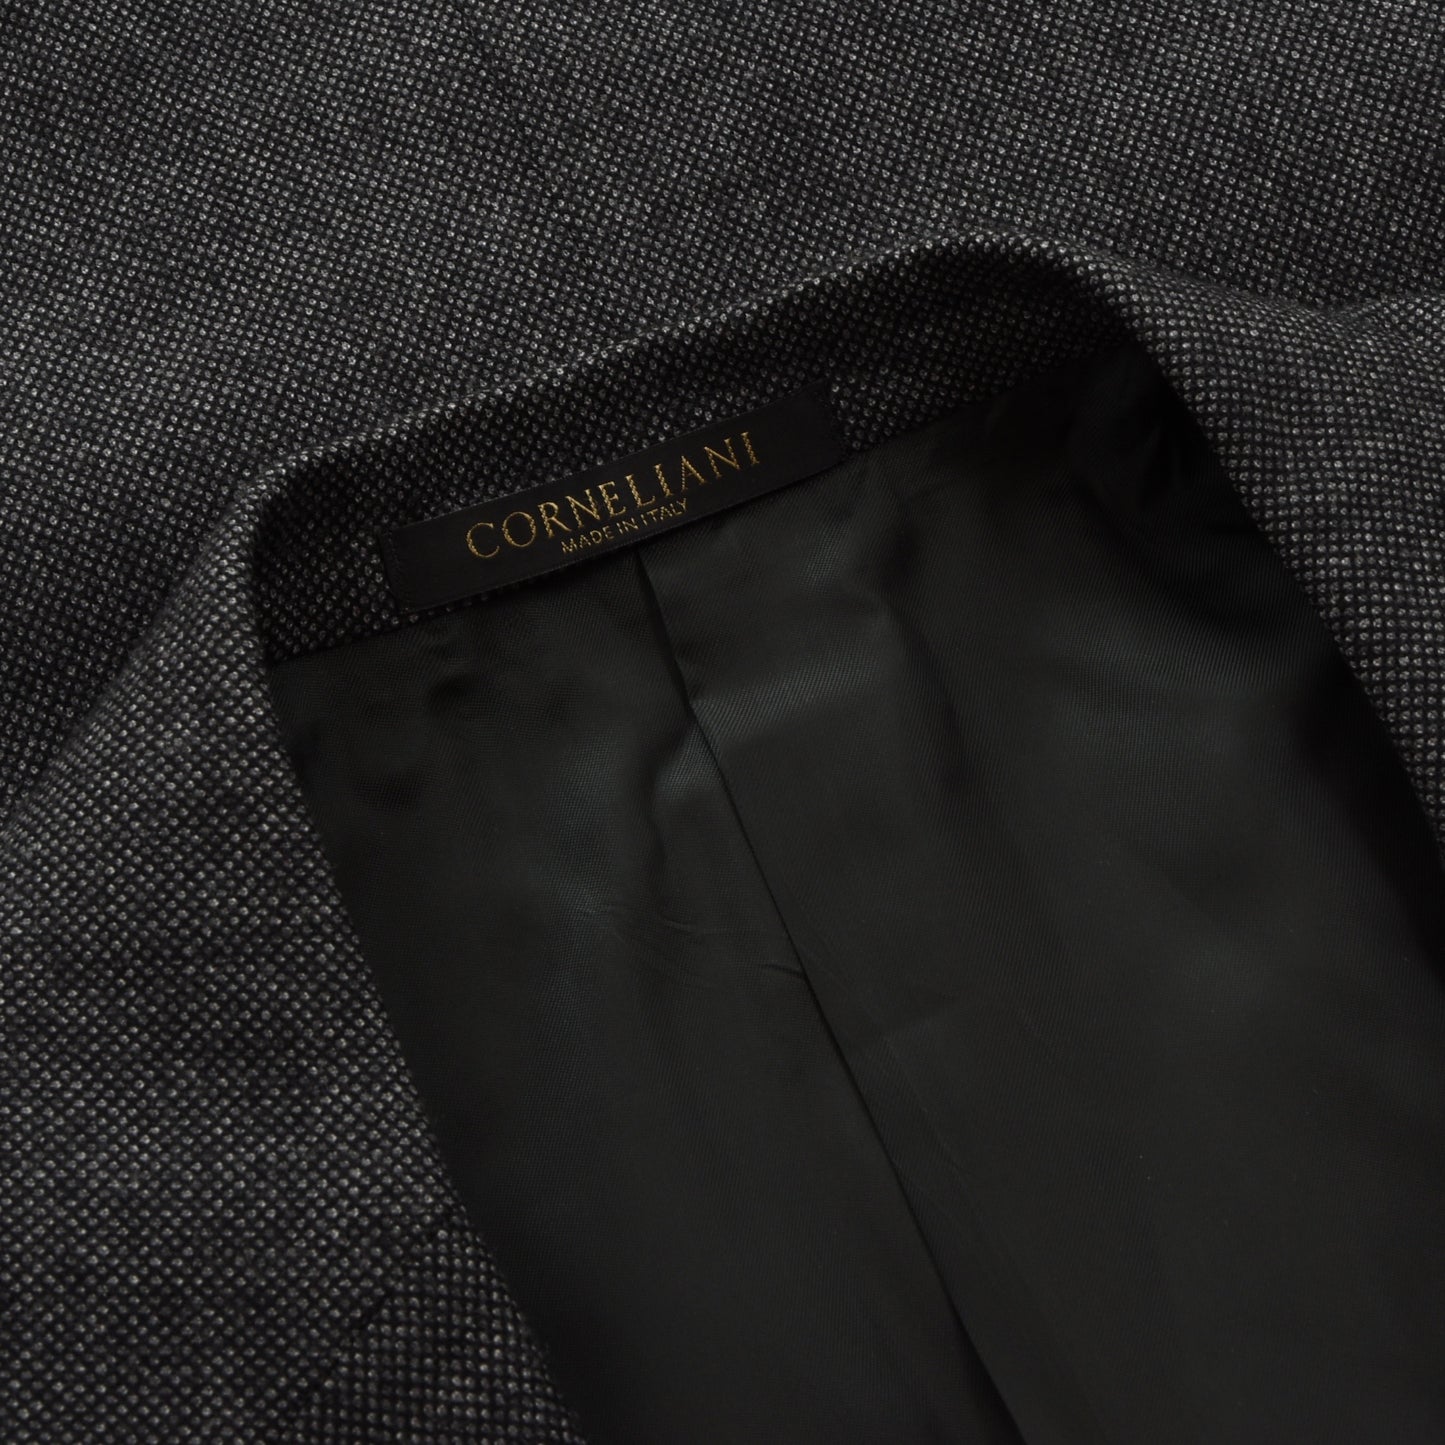 Corneliani Wollanzug Größe 56 - Grau